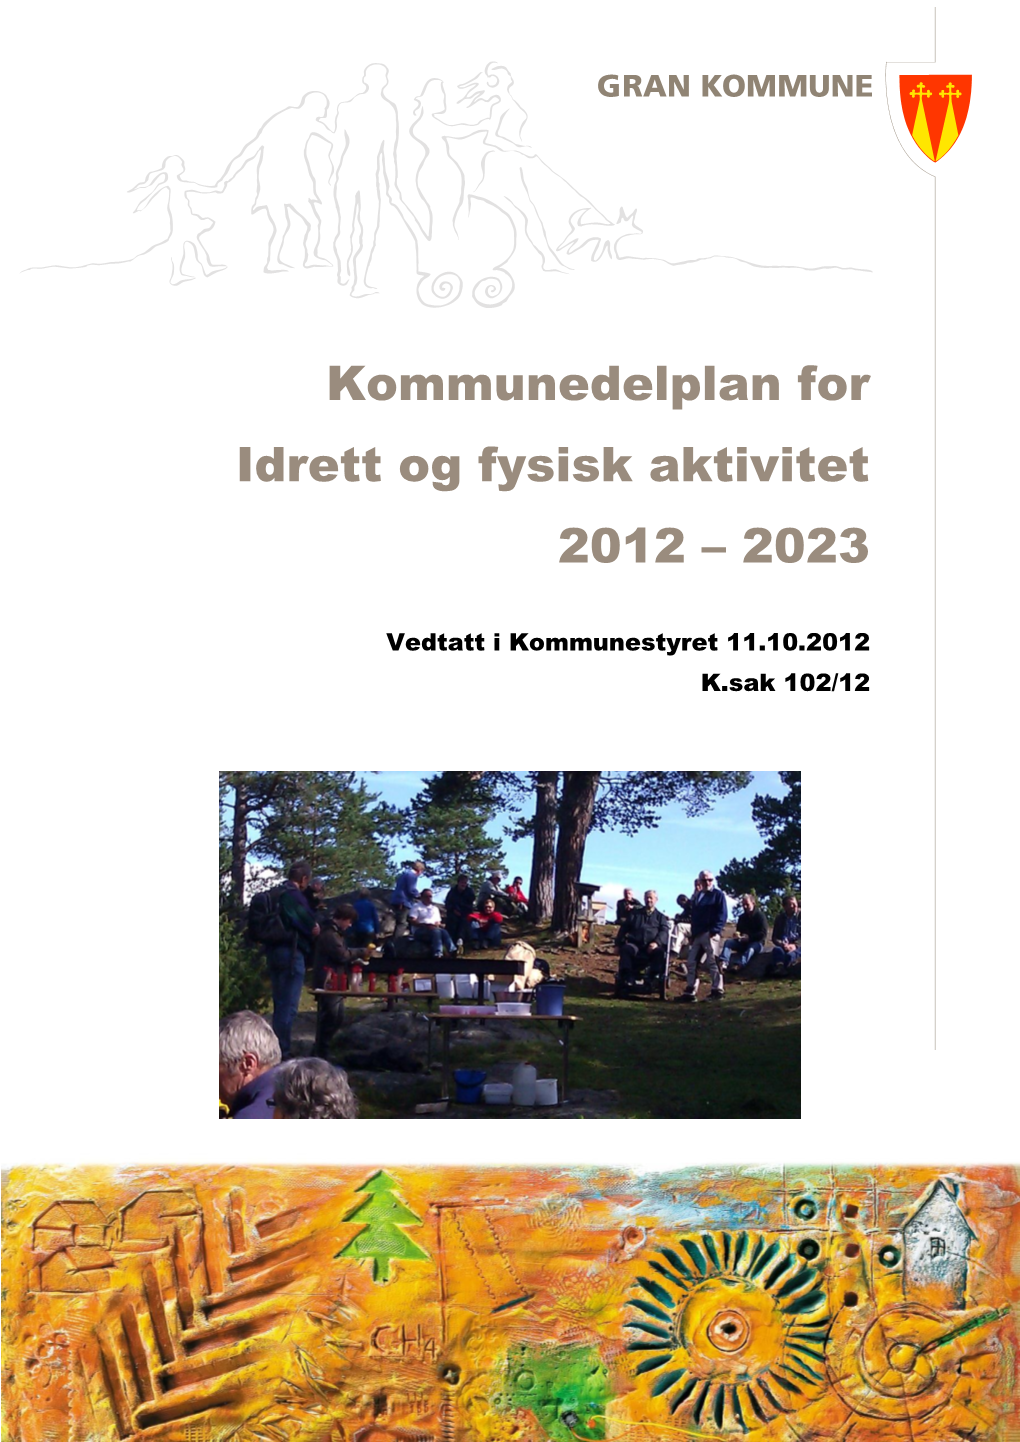 Idrett Og Fysisk Aktivitet 2012-2023, Kommunedelplan